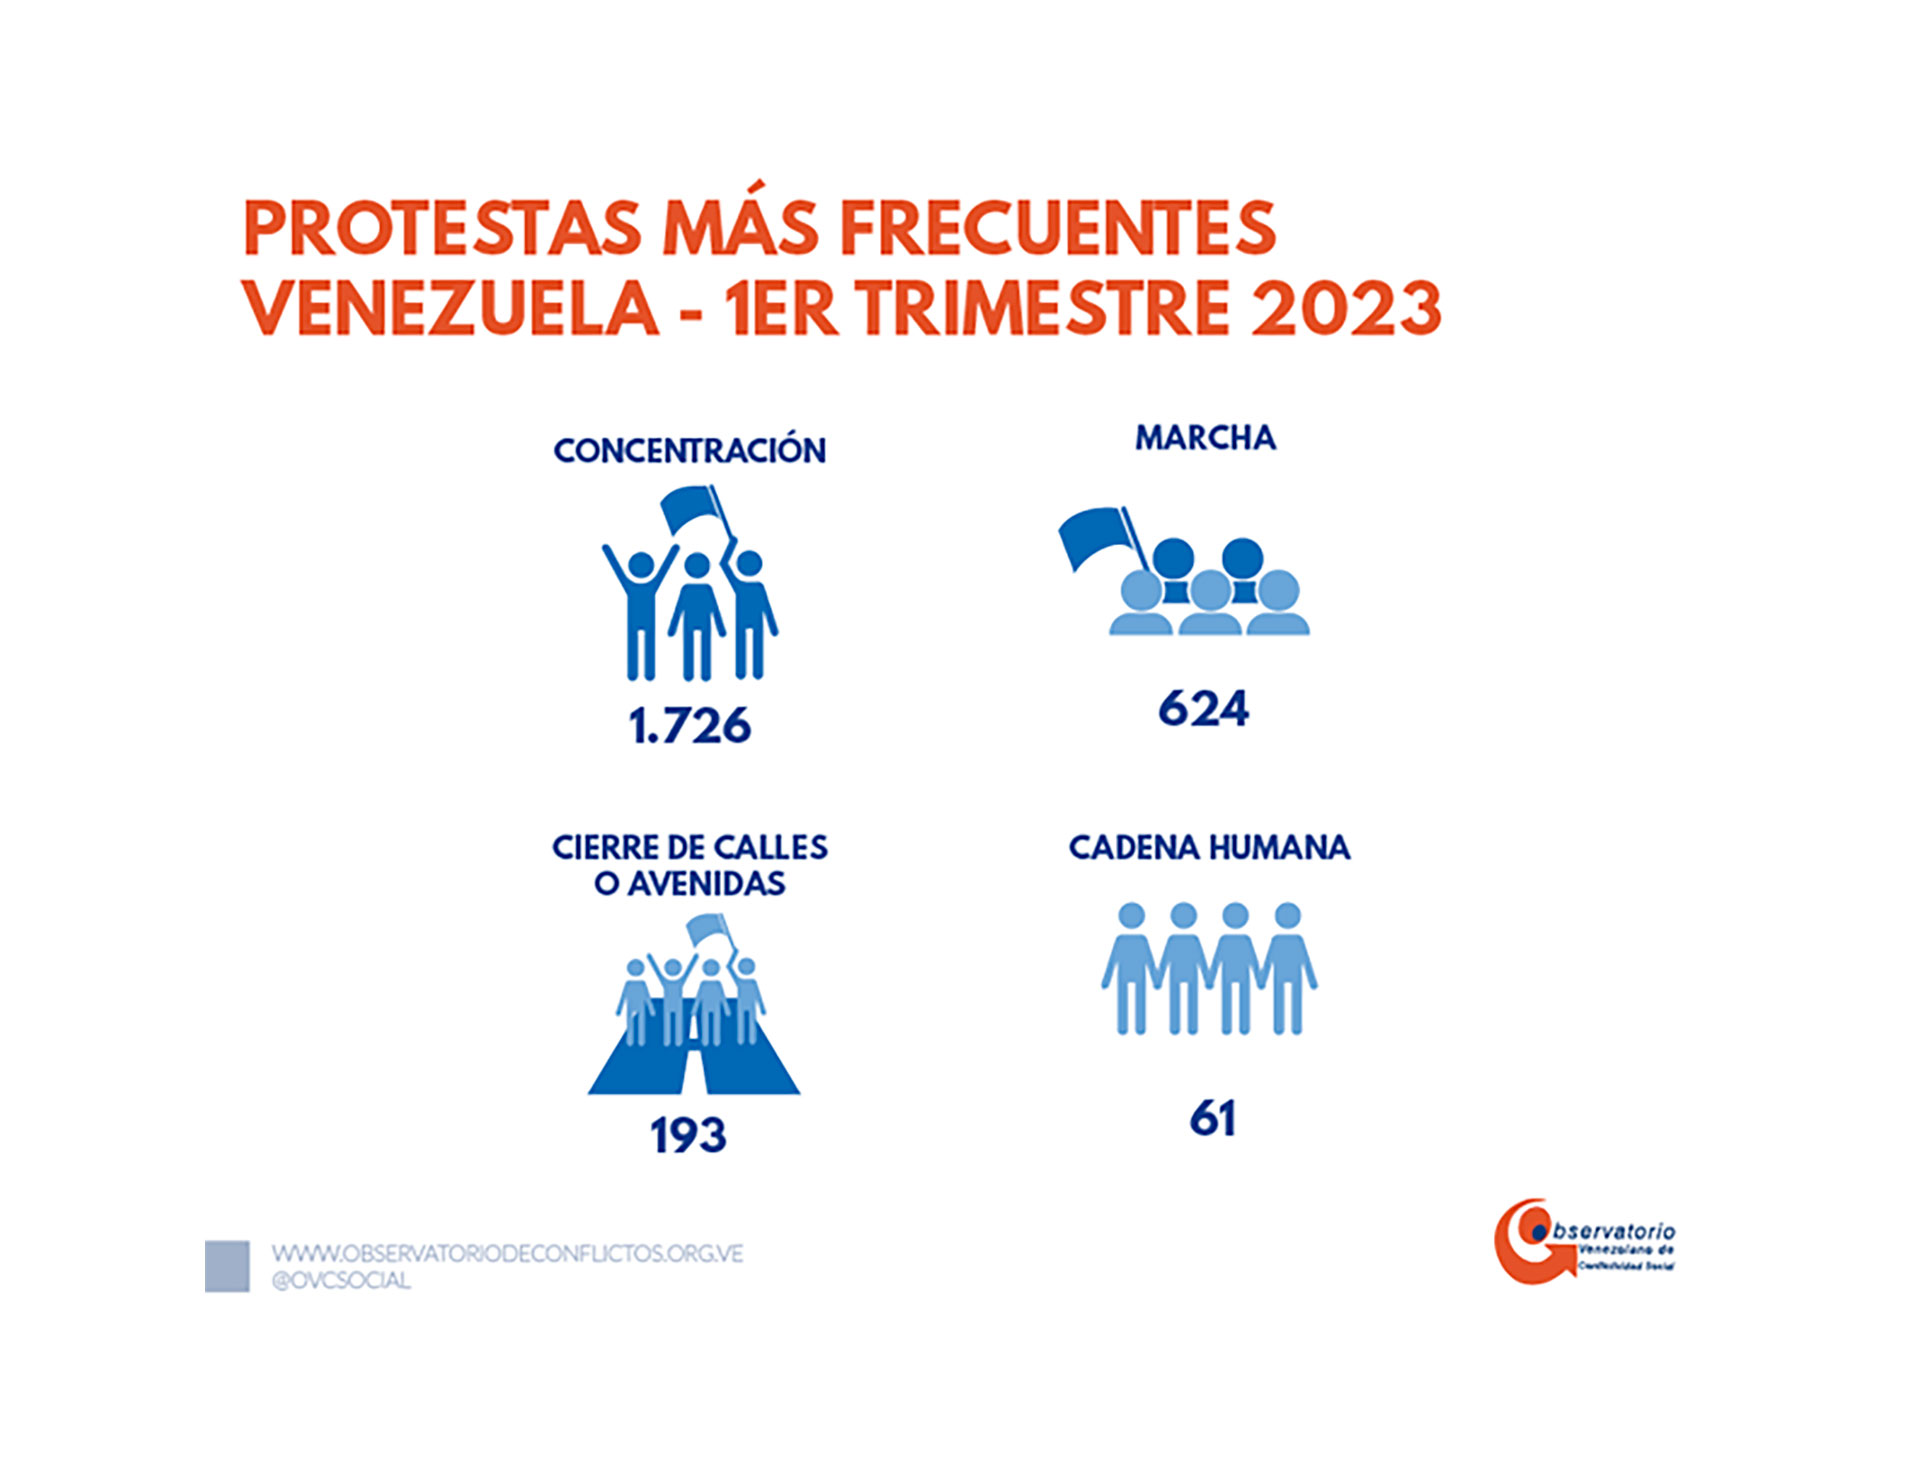 Las protestas más frecuentes (Crédito: Observatorio Venezolano de Conflictividad Social)